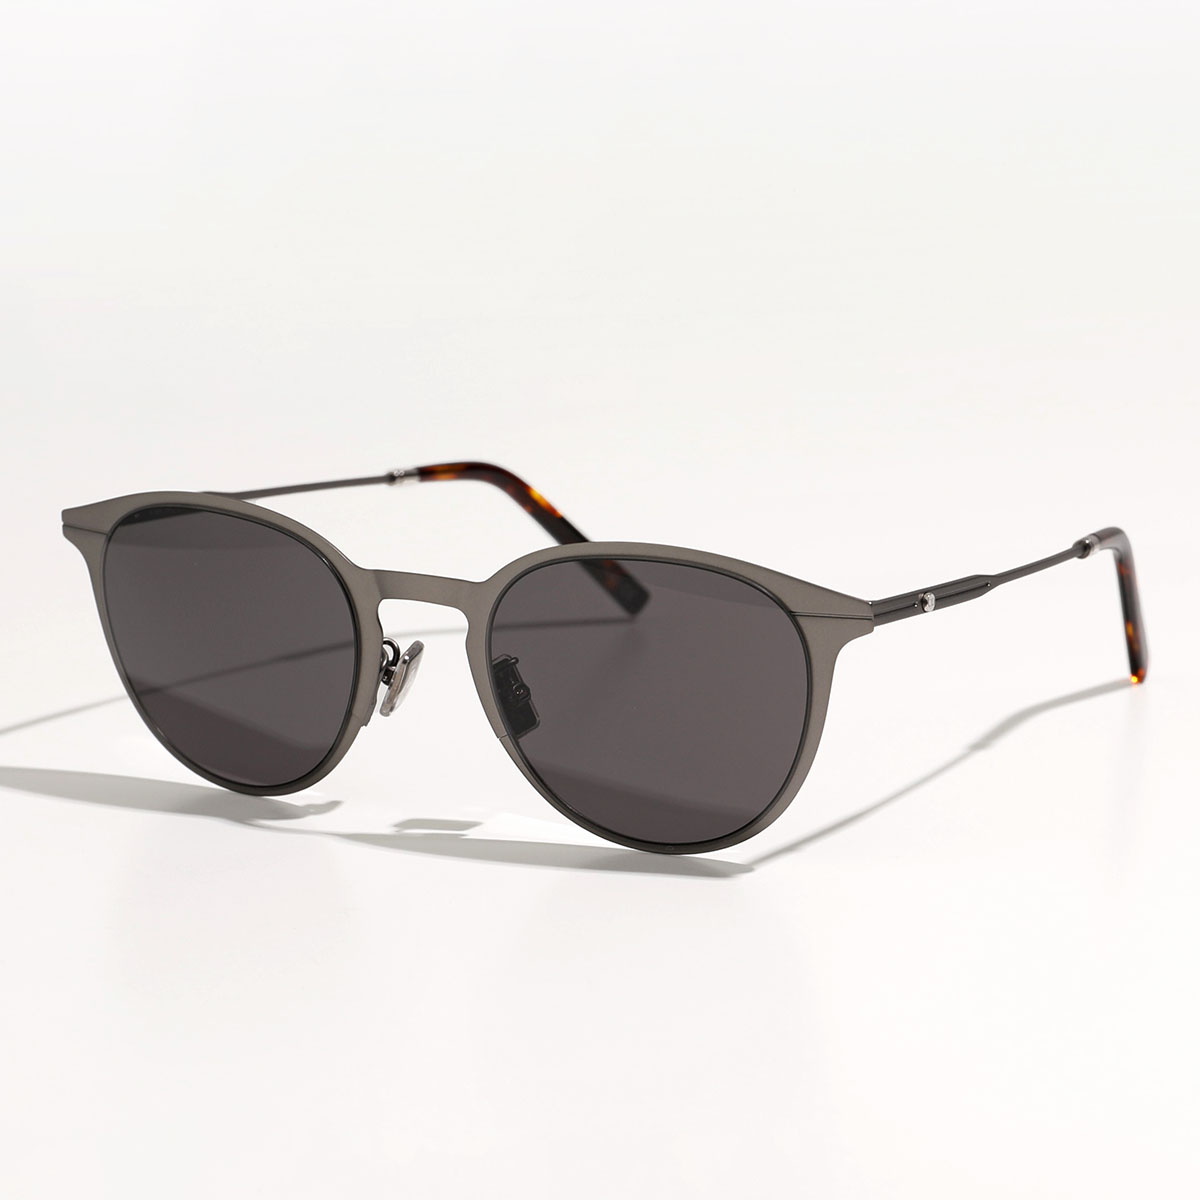 Dior ディオール サングラス ESSENTIAL エッセンシャル DM40006U メンズ ボストン型 メガネ めがね 眼鏡 アイウェア カラー2色